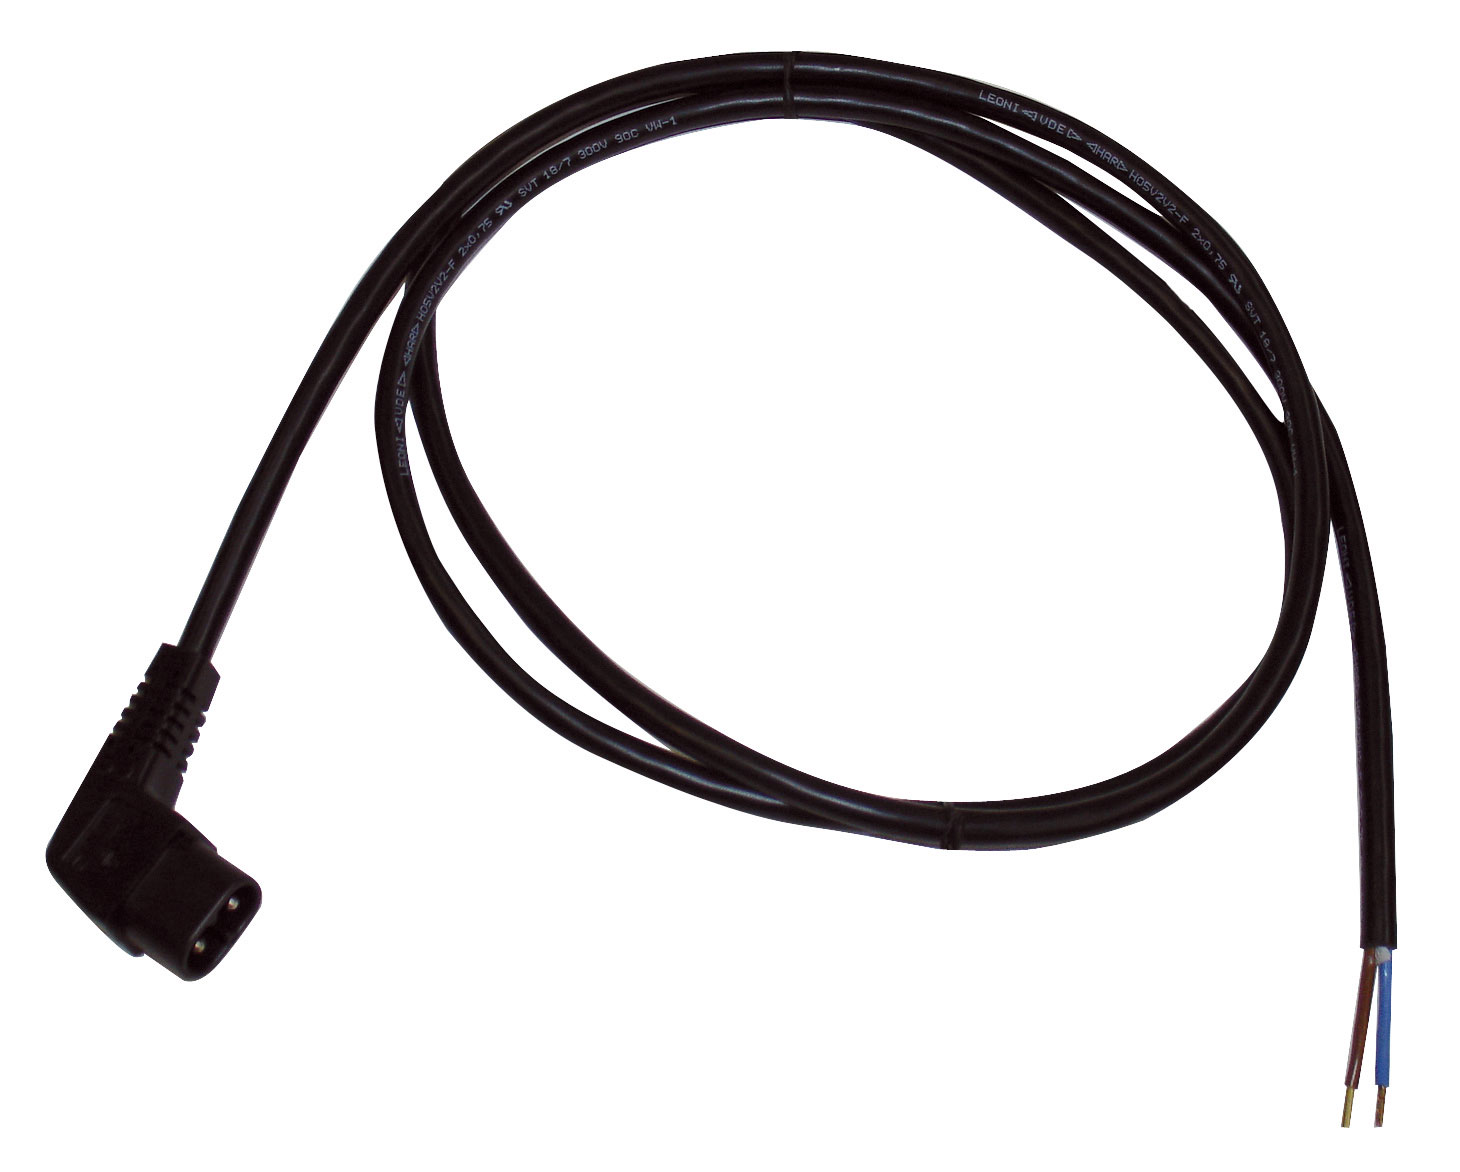 Foto: Kabel für Türpositionsanschluss an Leuchte DV90033x-A (c) Schrack